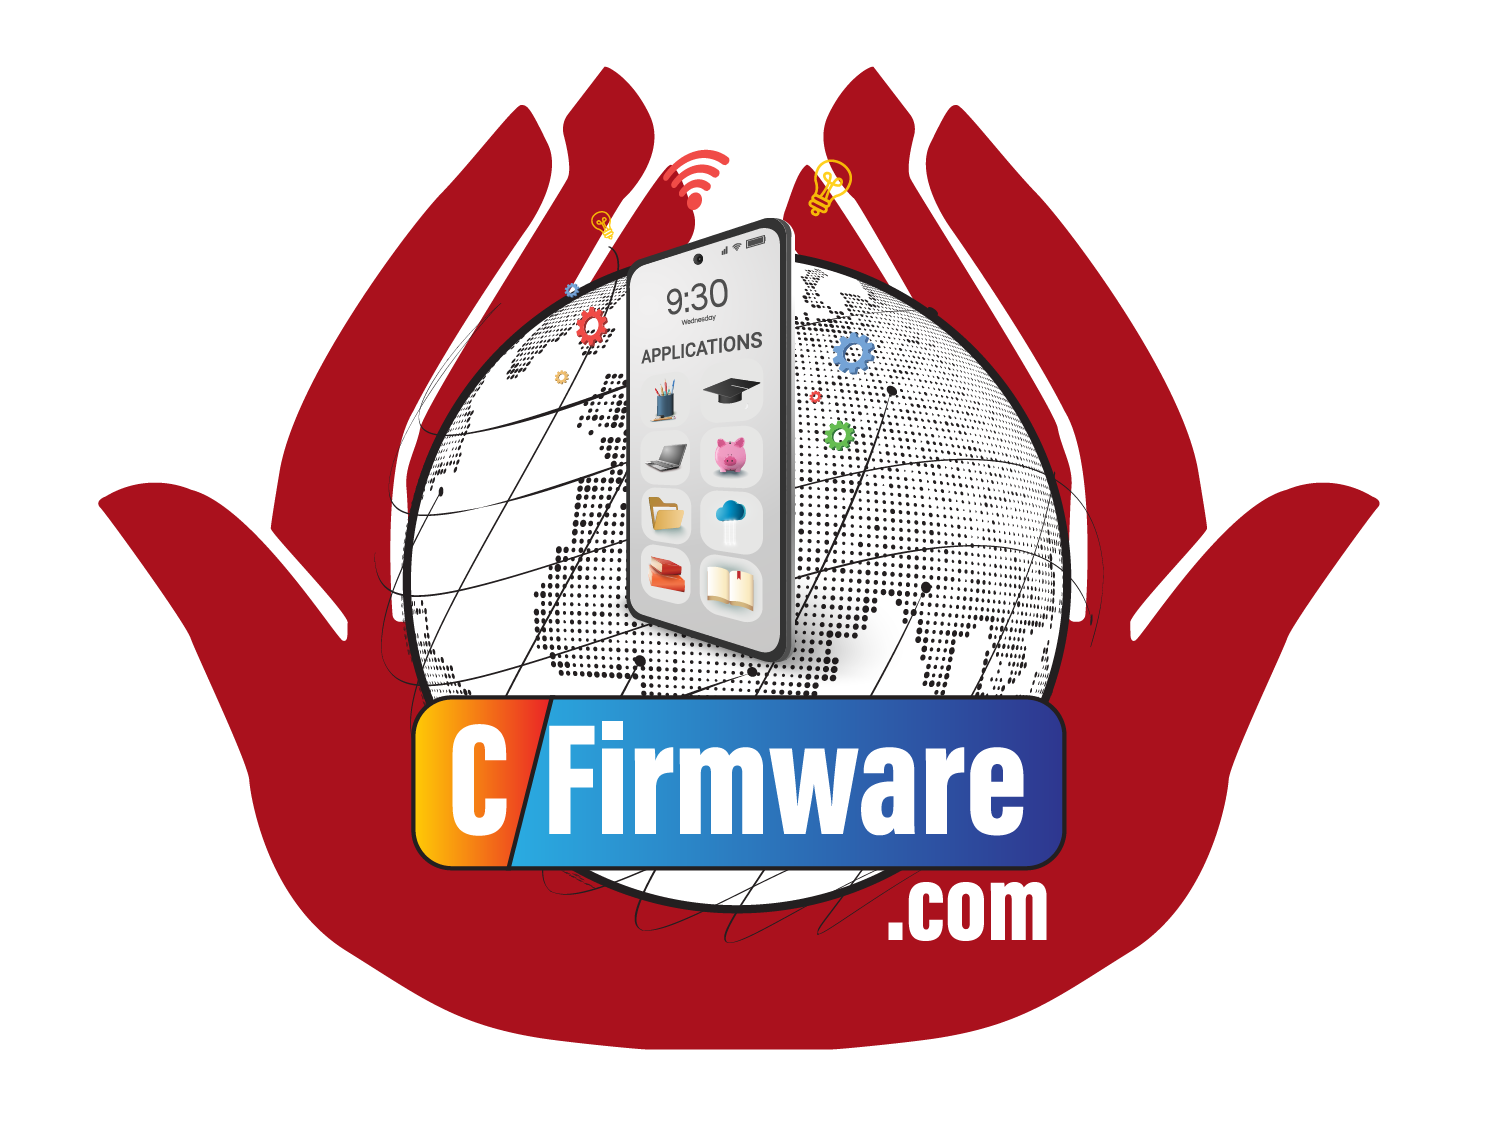 CFirmware